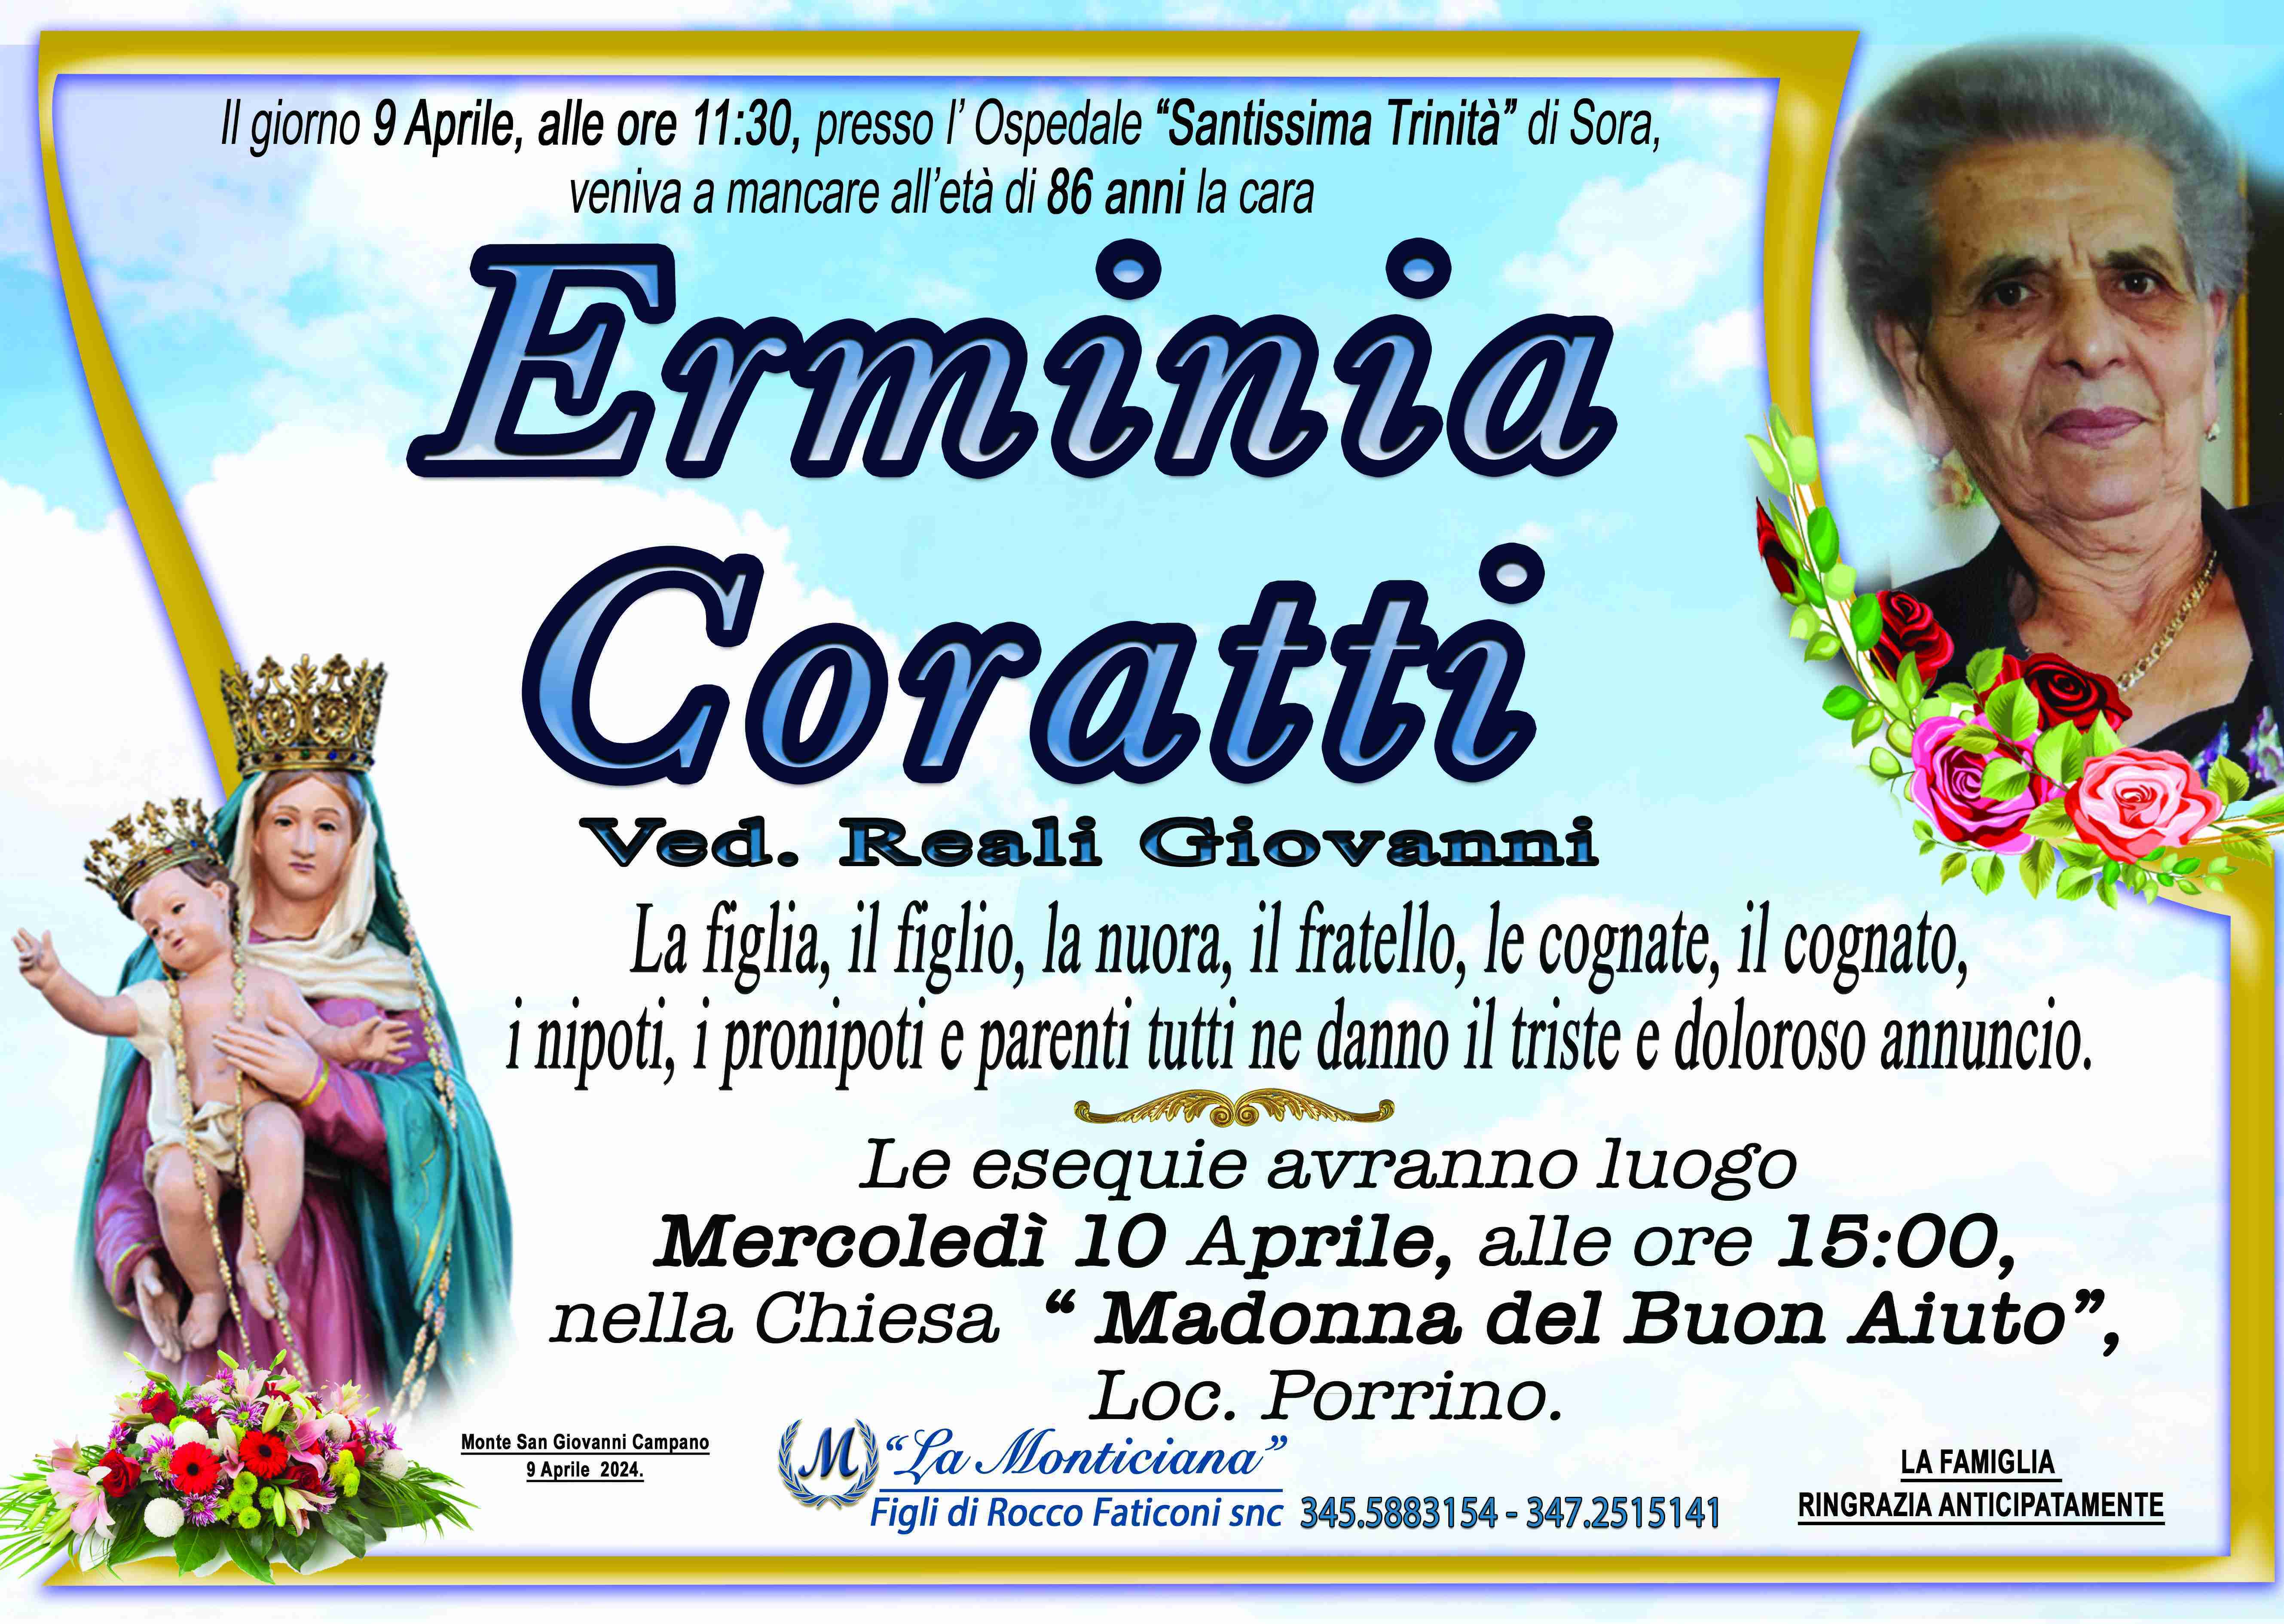 Erminia Coratti